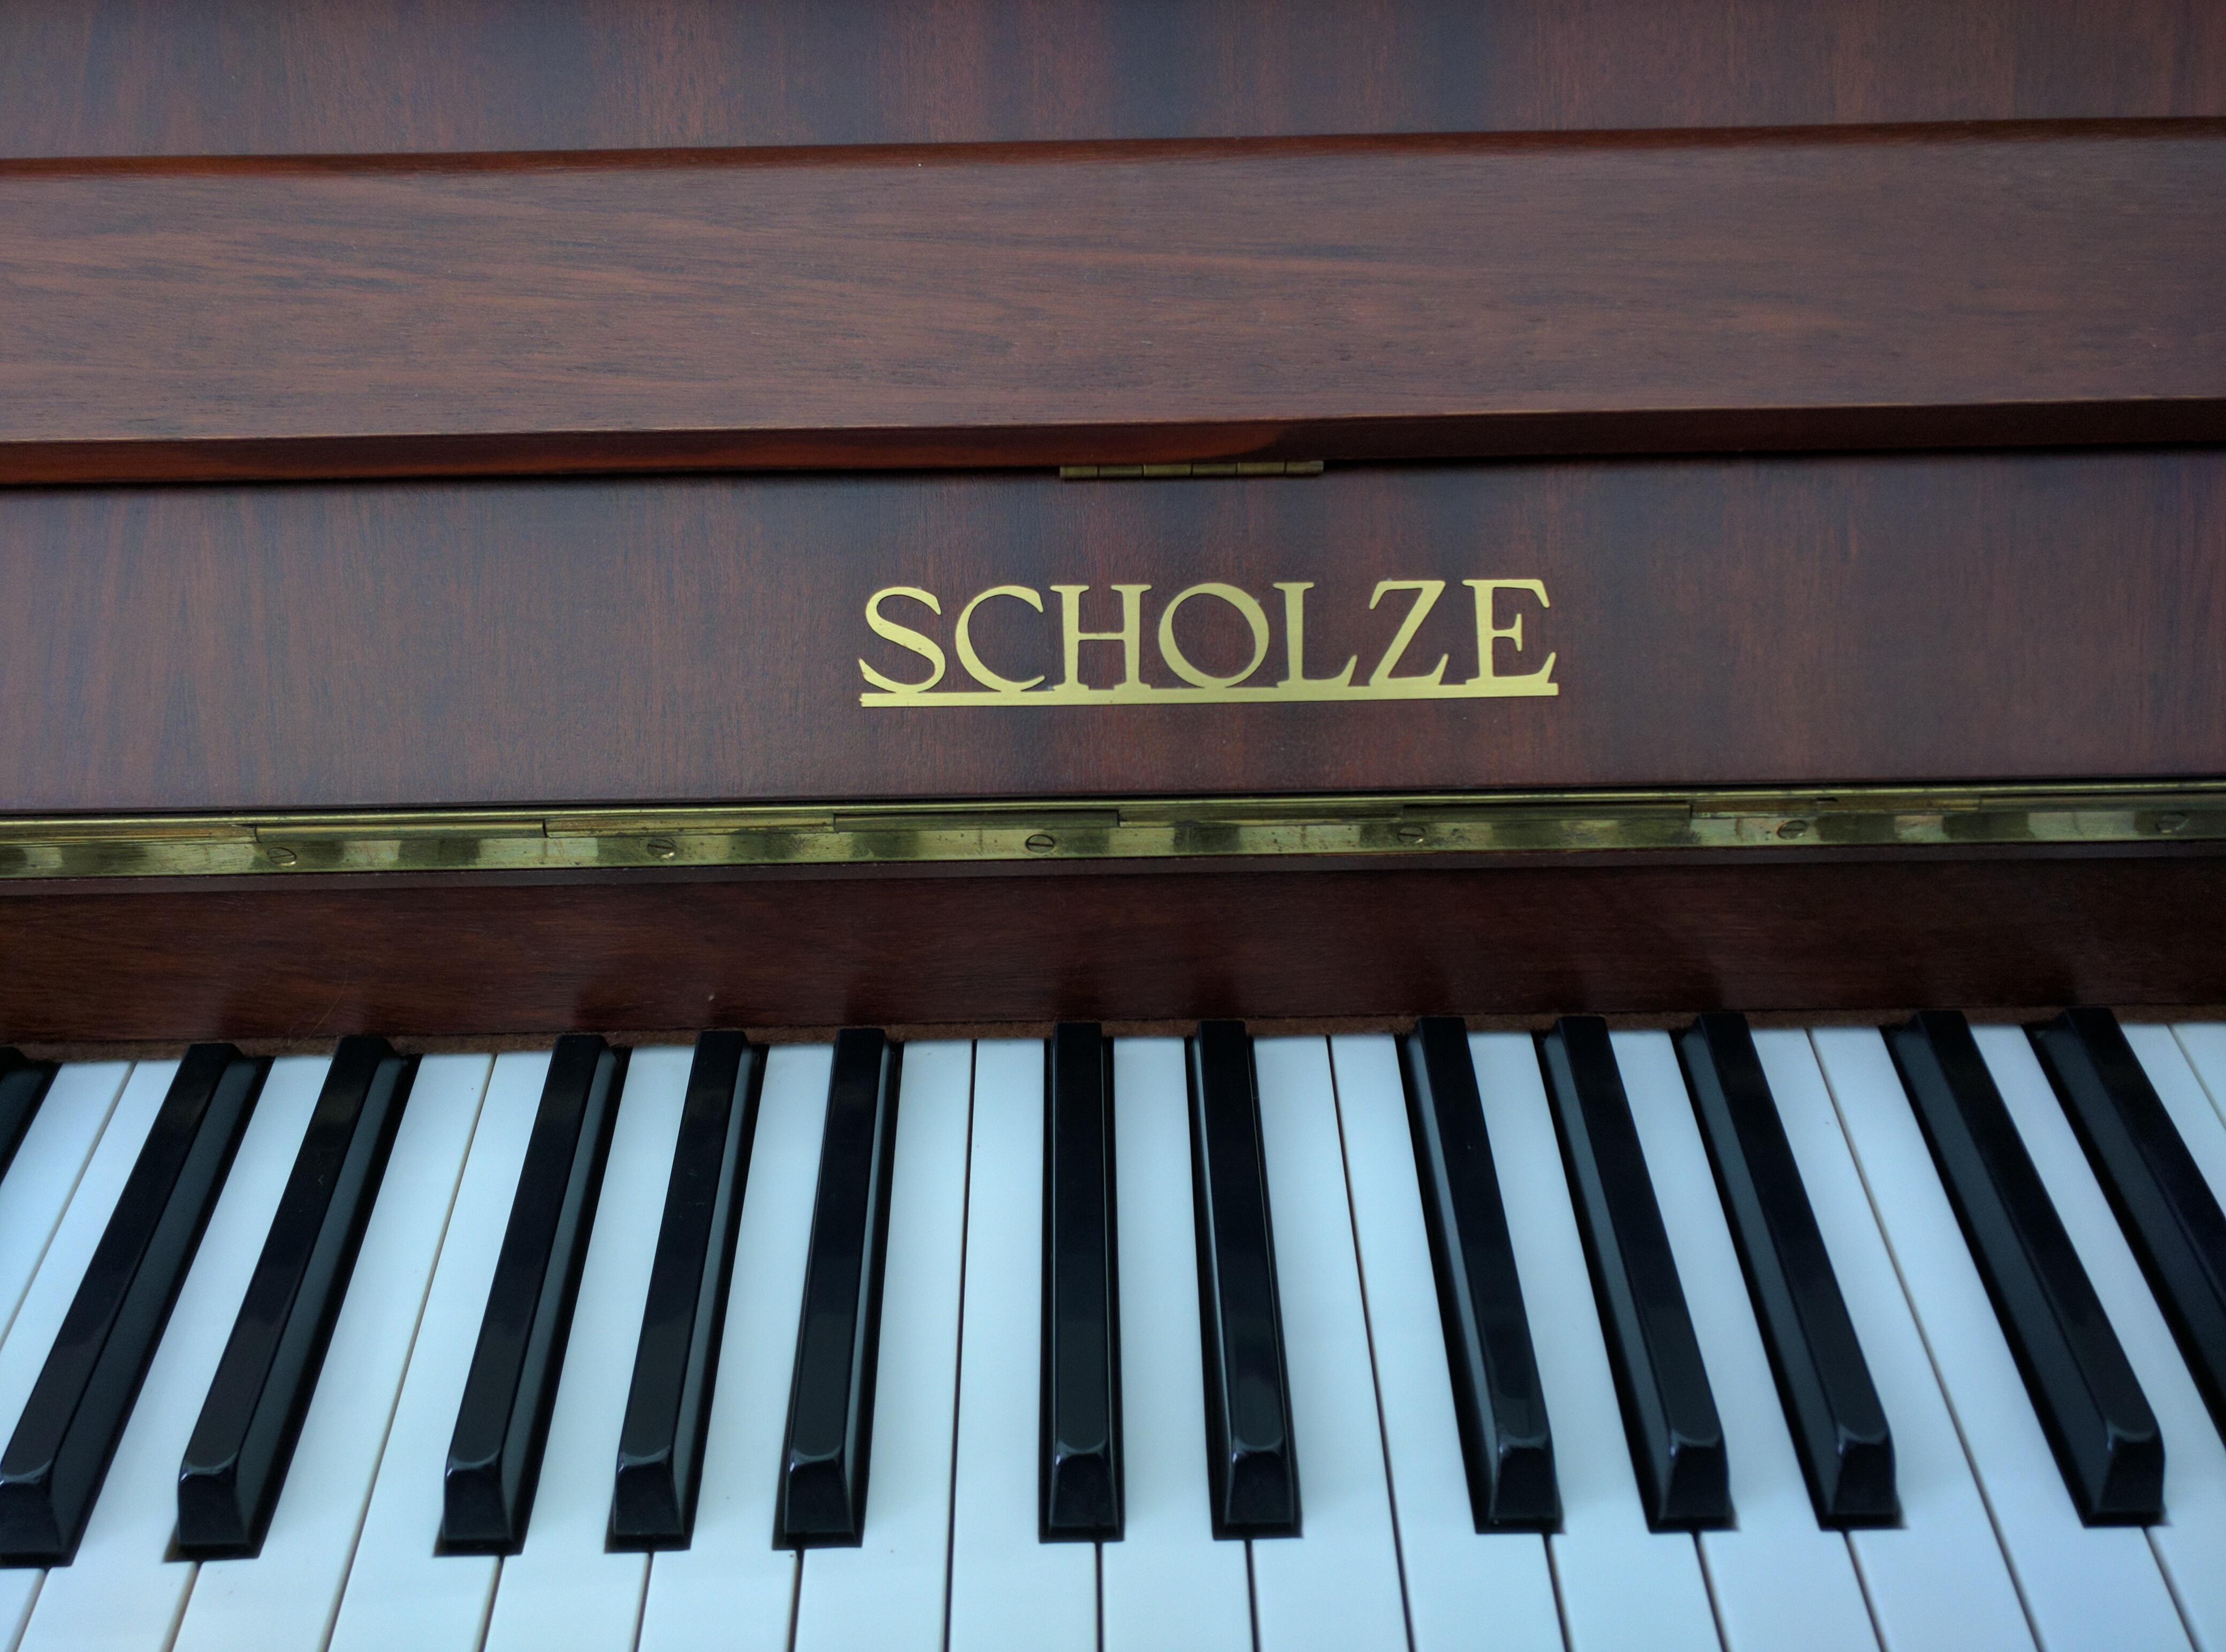 Scholze Upright Piano Logo and keys (1985)